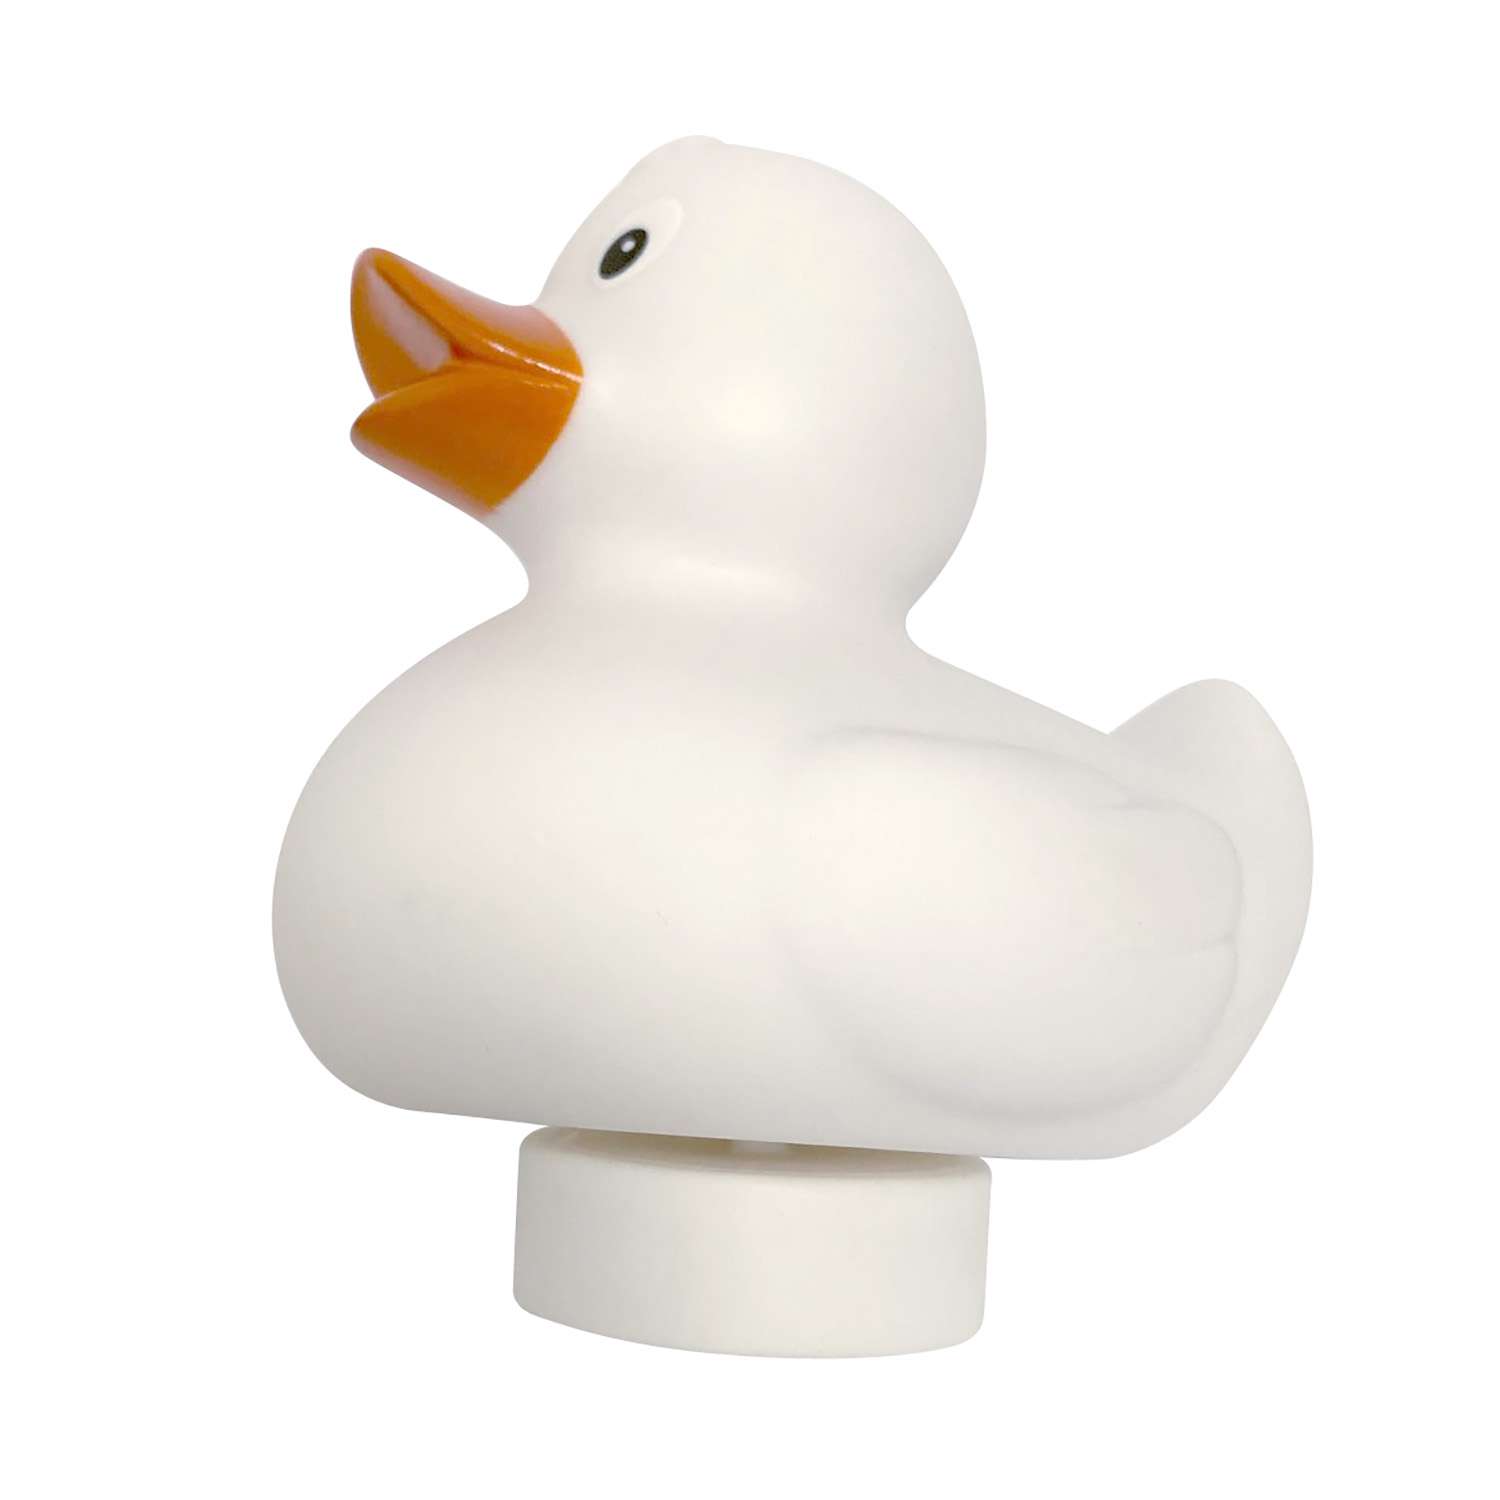 Игрушка Funny ducks для ванной Грузило для уточки 1000 - фото 2